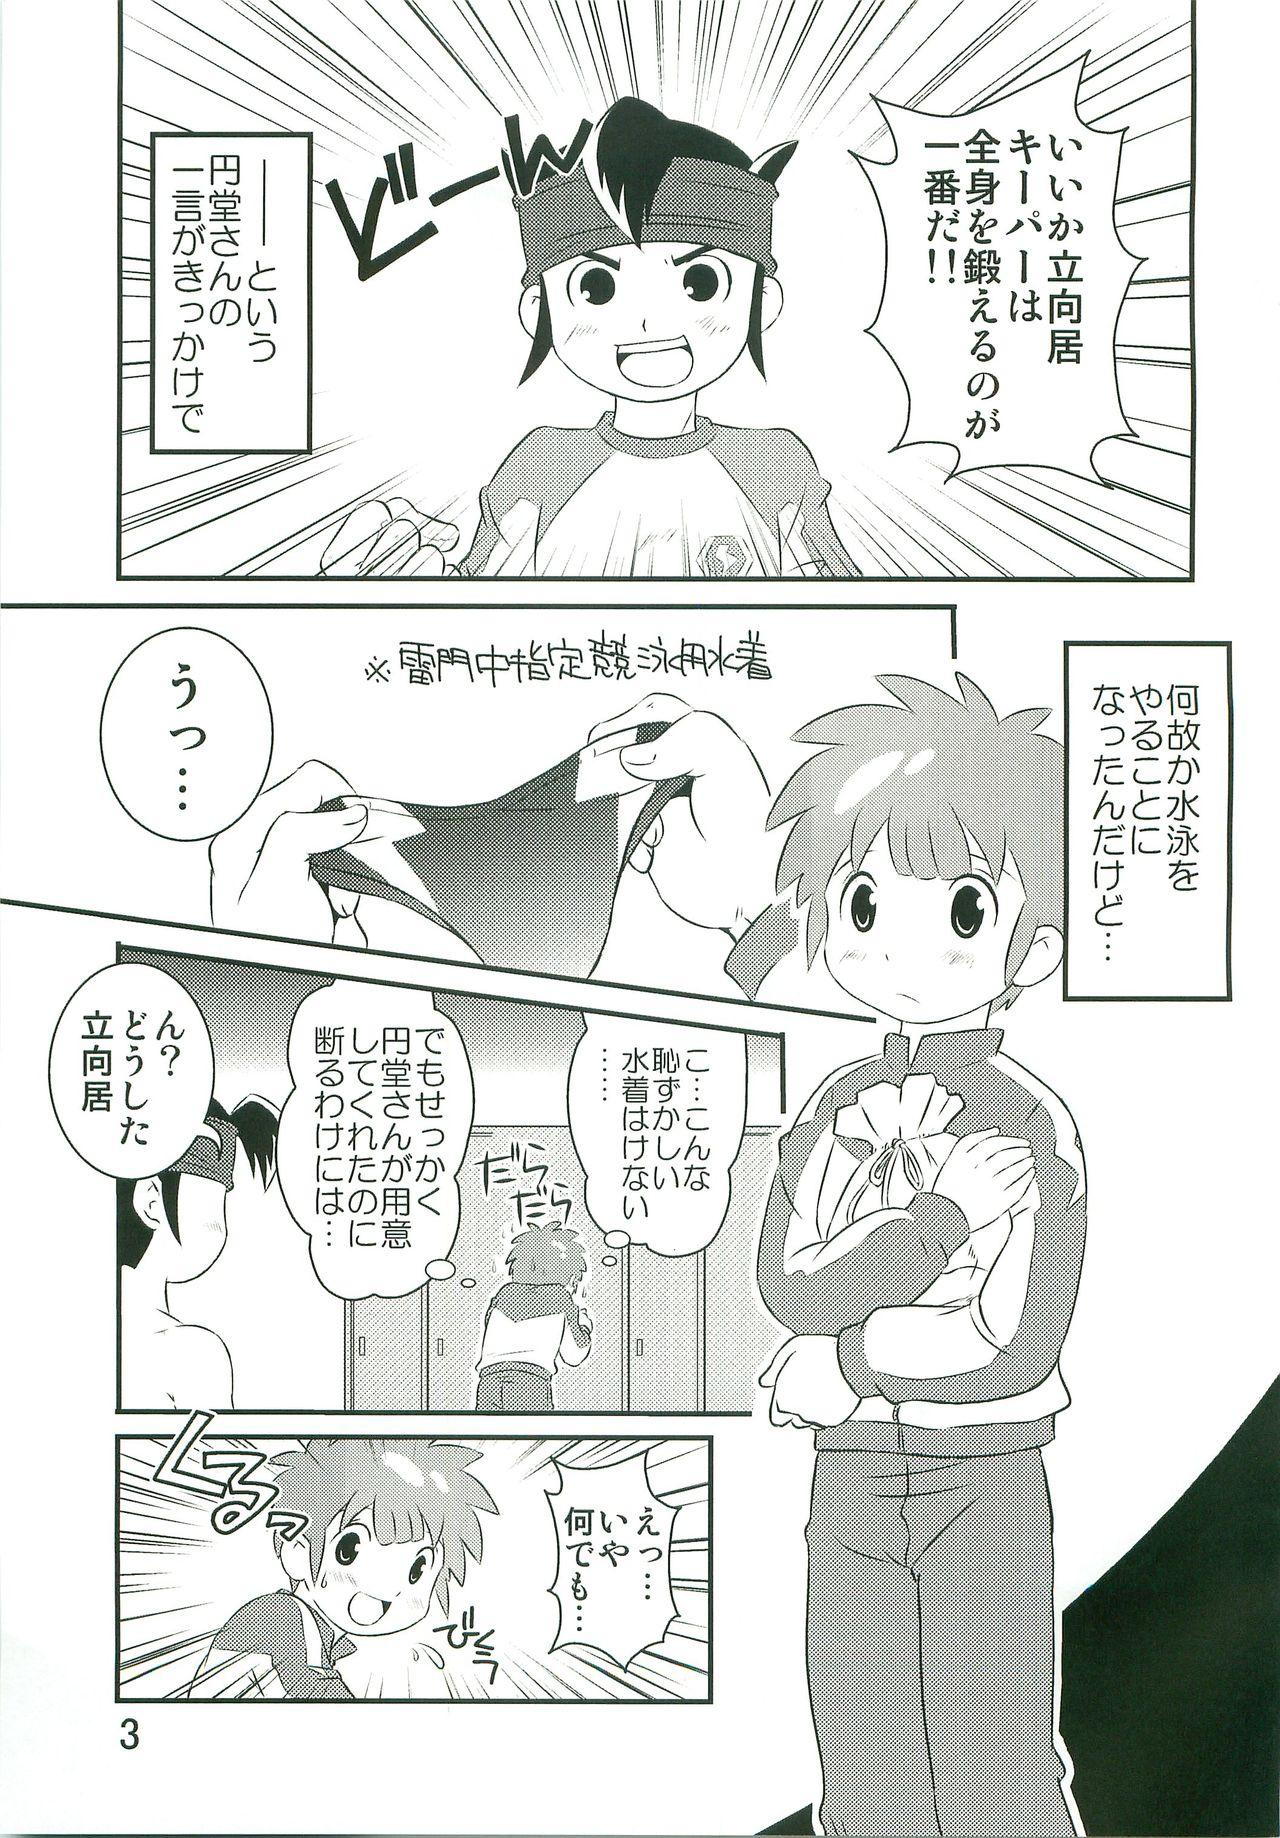 Cogiendo Tokkun nau! - Inazuma eleven Yanks Featured - Page 2